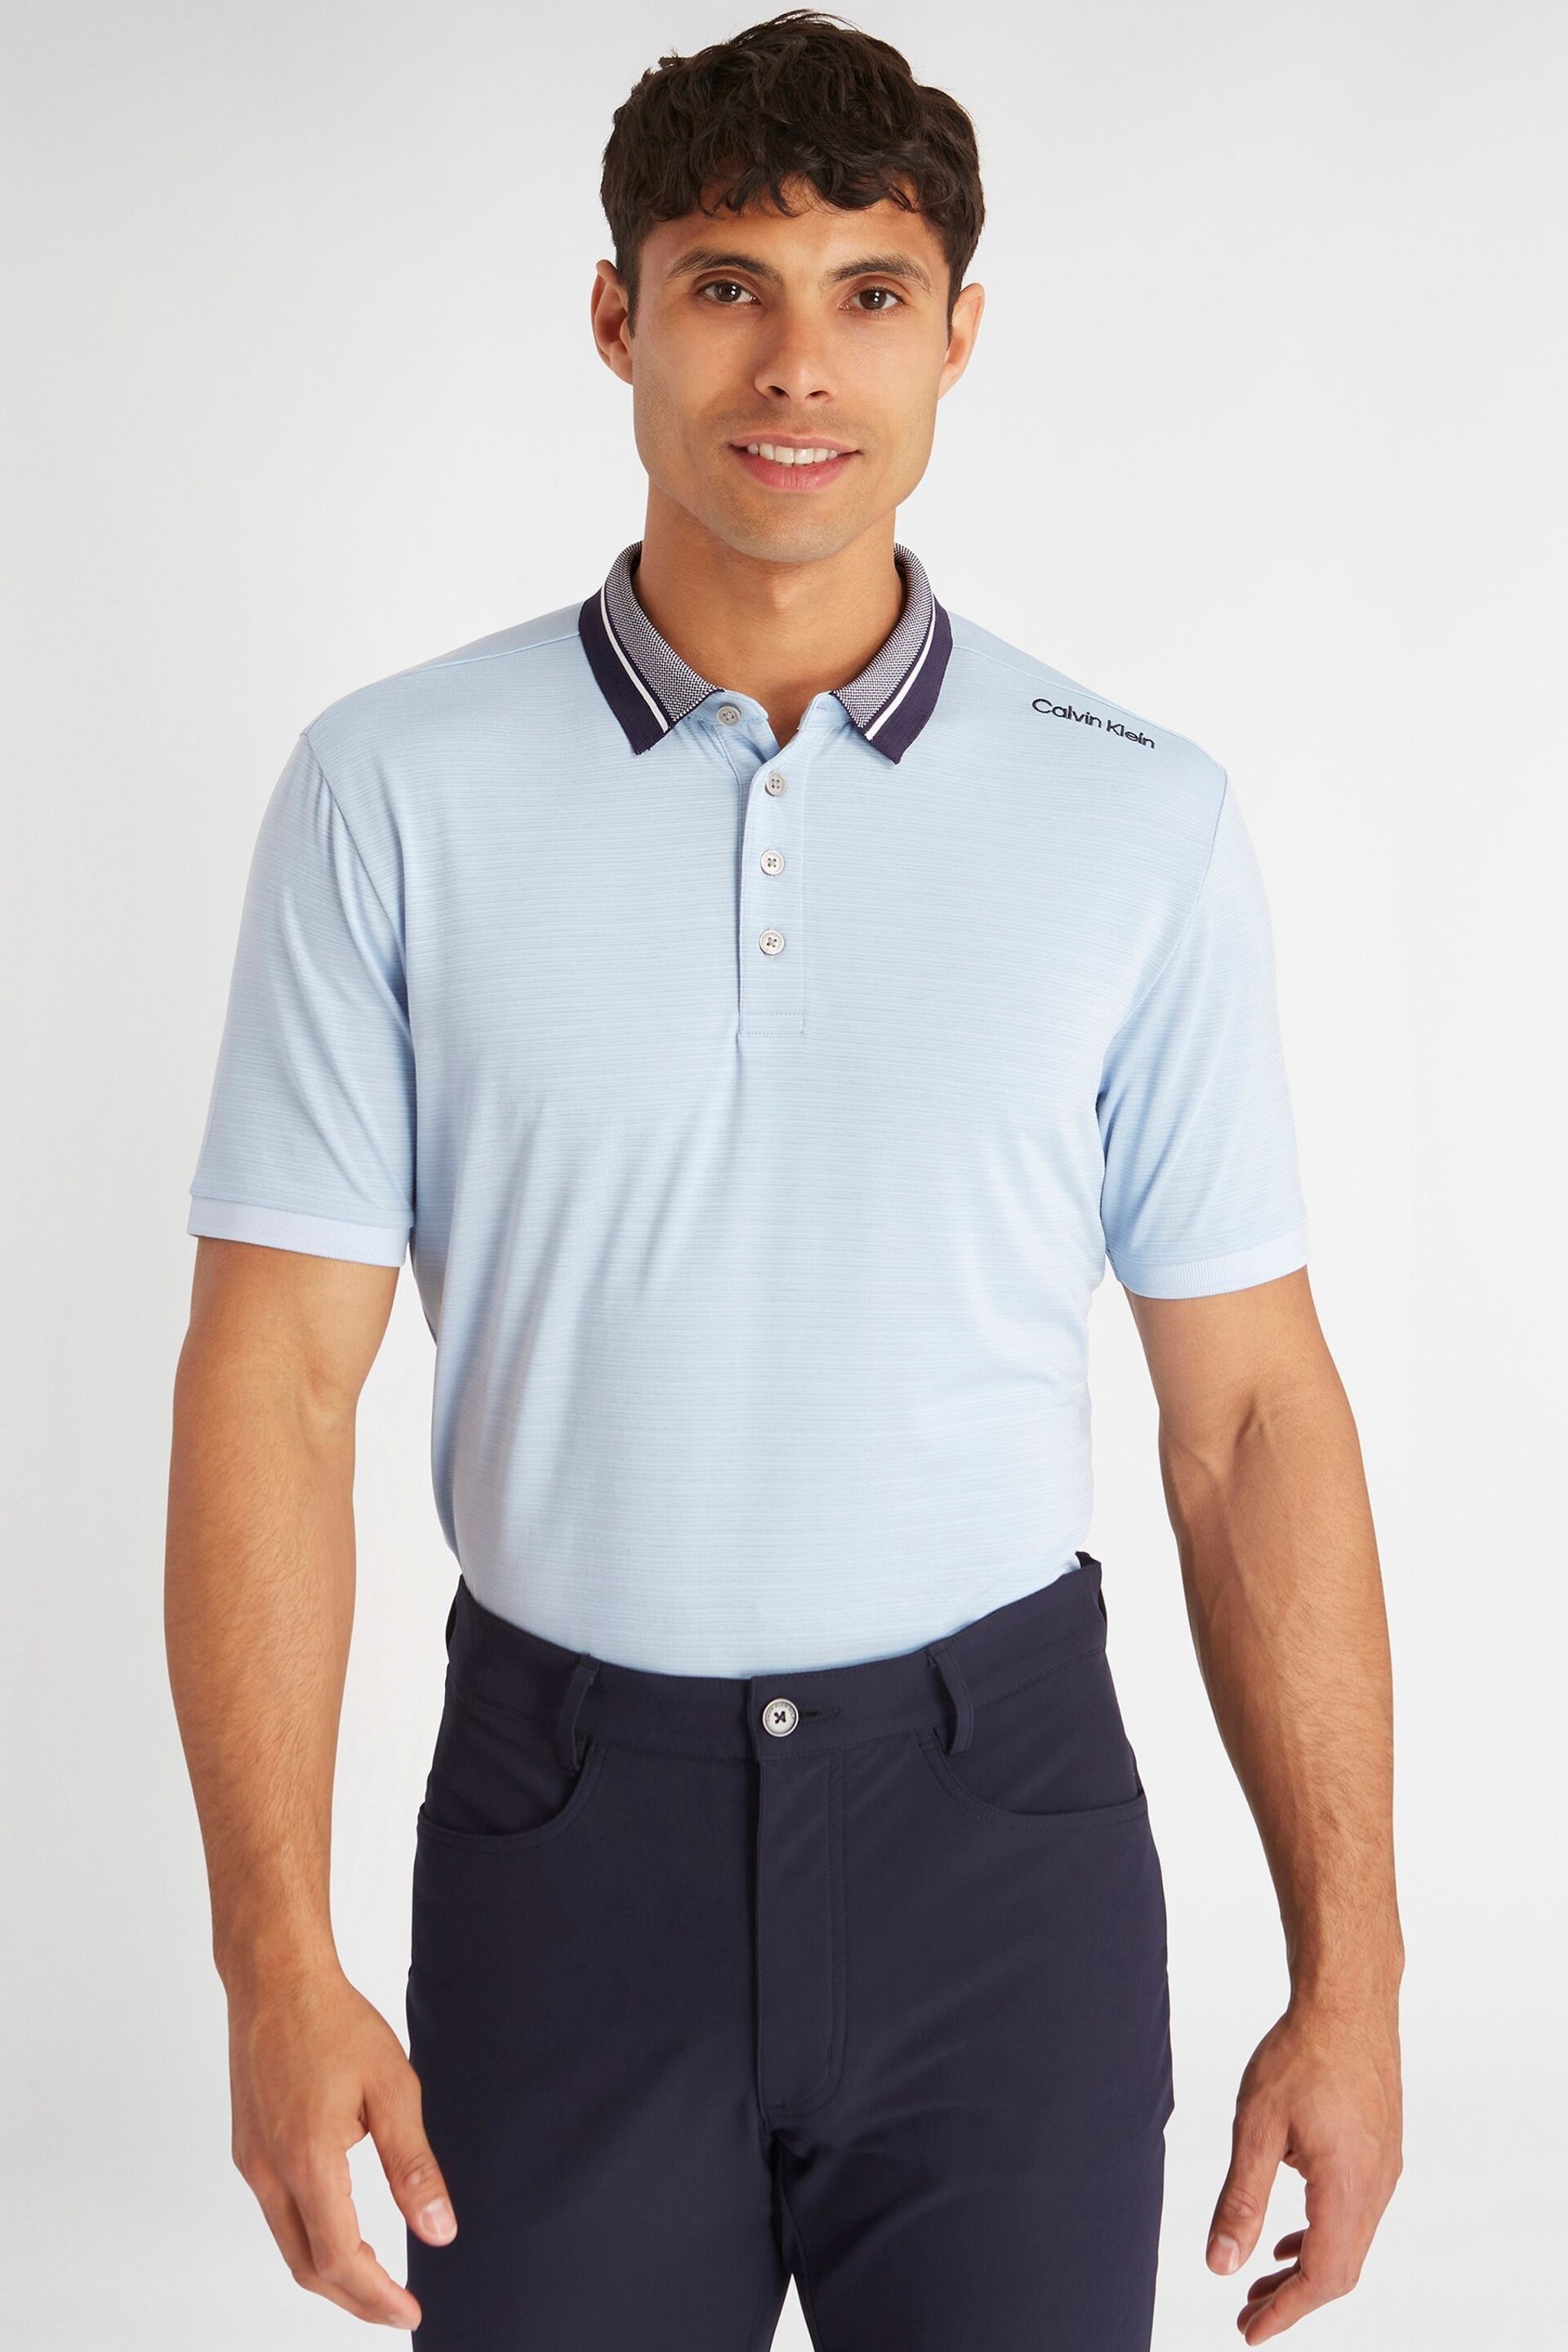 Calvin Klein Golf Navy Parramore Polo Shirt - Image 1 of 8